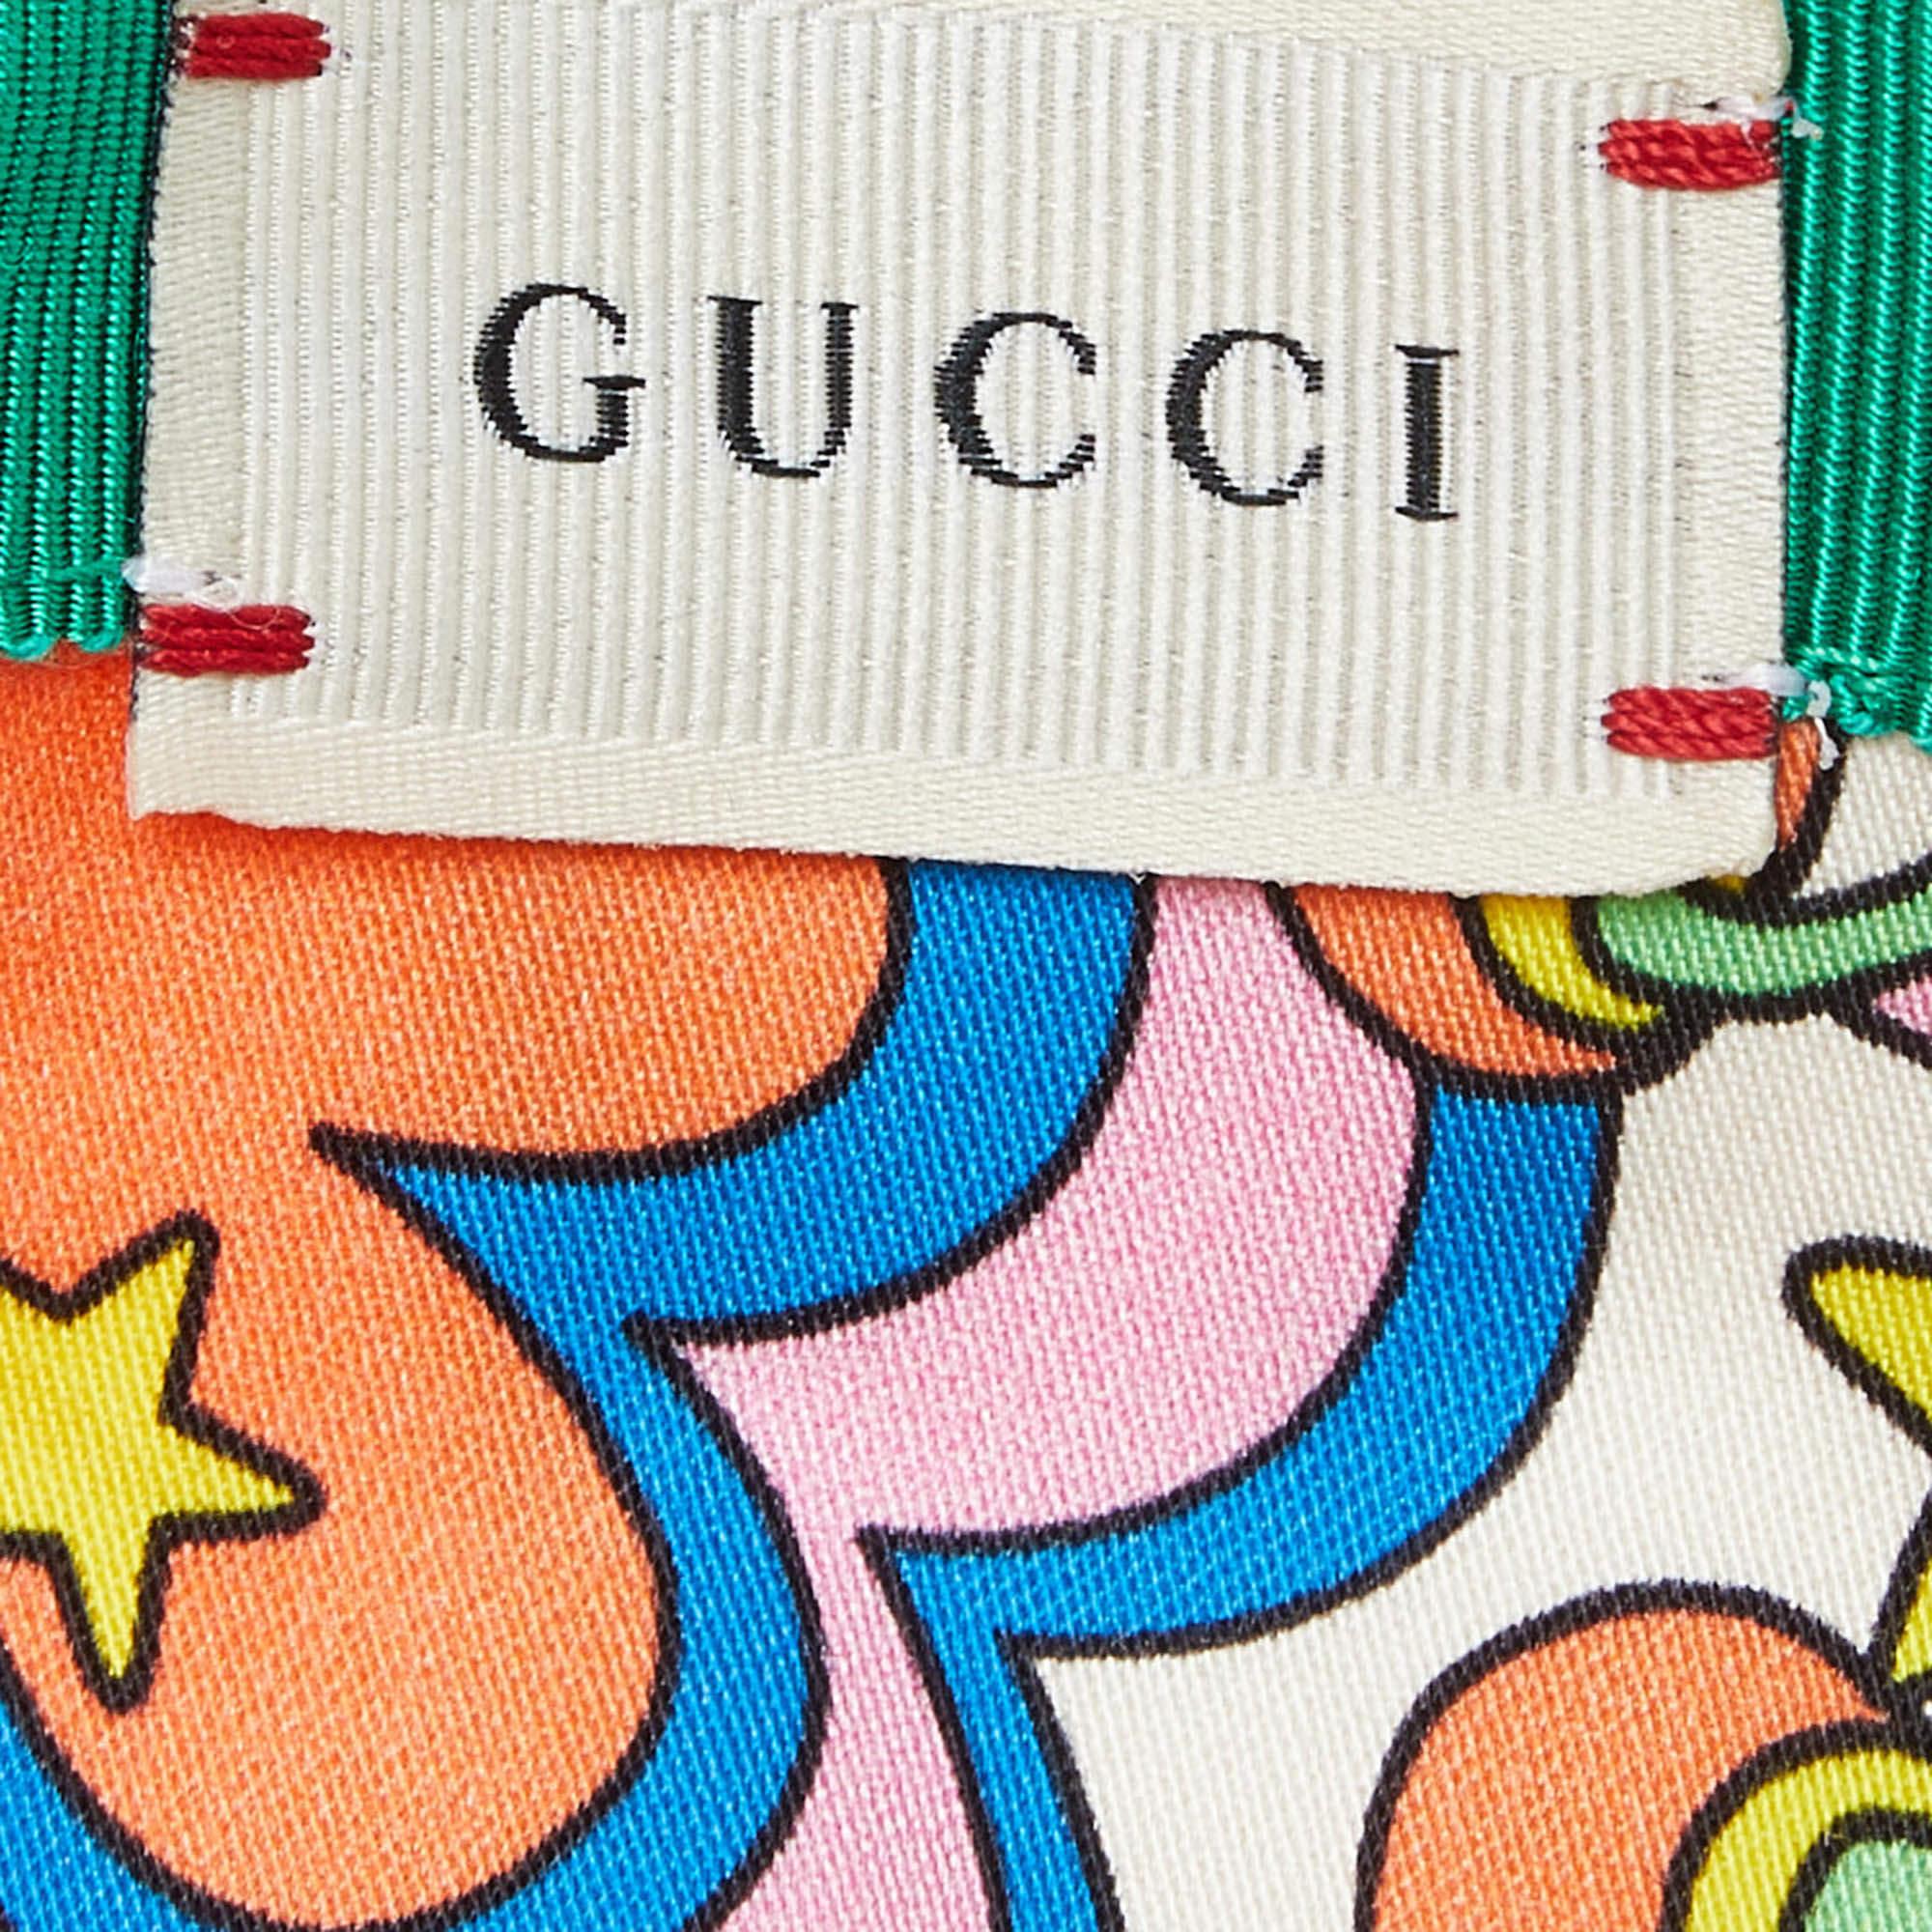 Caps sind ein ideales Style-Statement zu lässigen Outfits. Dieses Gucci-Teil ist aus hochwertigen MATERIALEN gefertigt und weist charakteristische Elemente auf. Dieses Stück wird Ihre Cap-Sammlung sinnvoll ergänzen.

Enthält: Original-Staubbeutel,